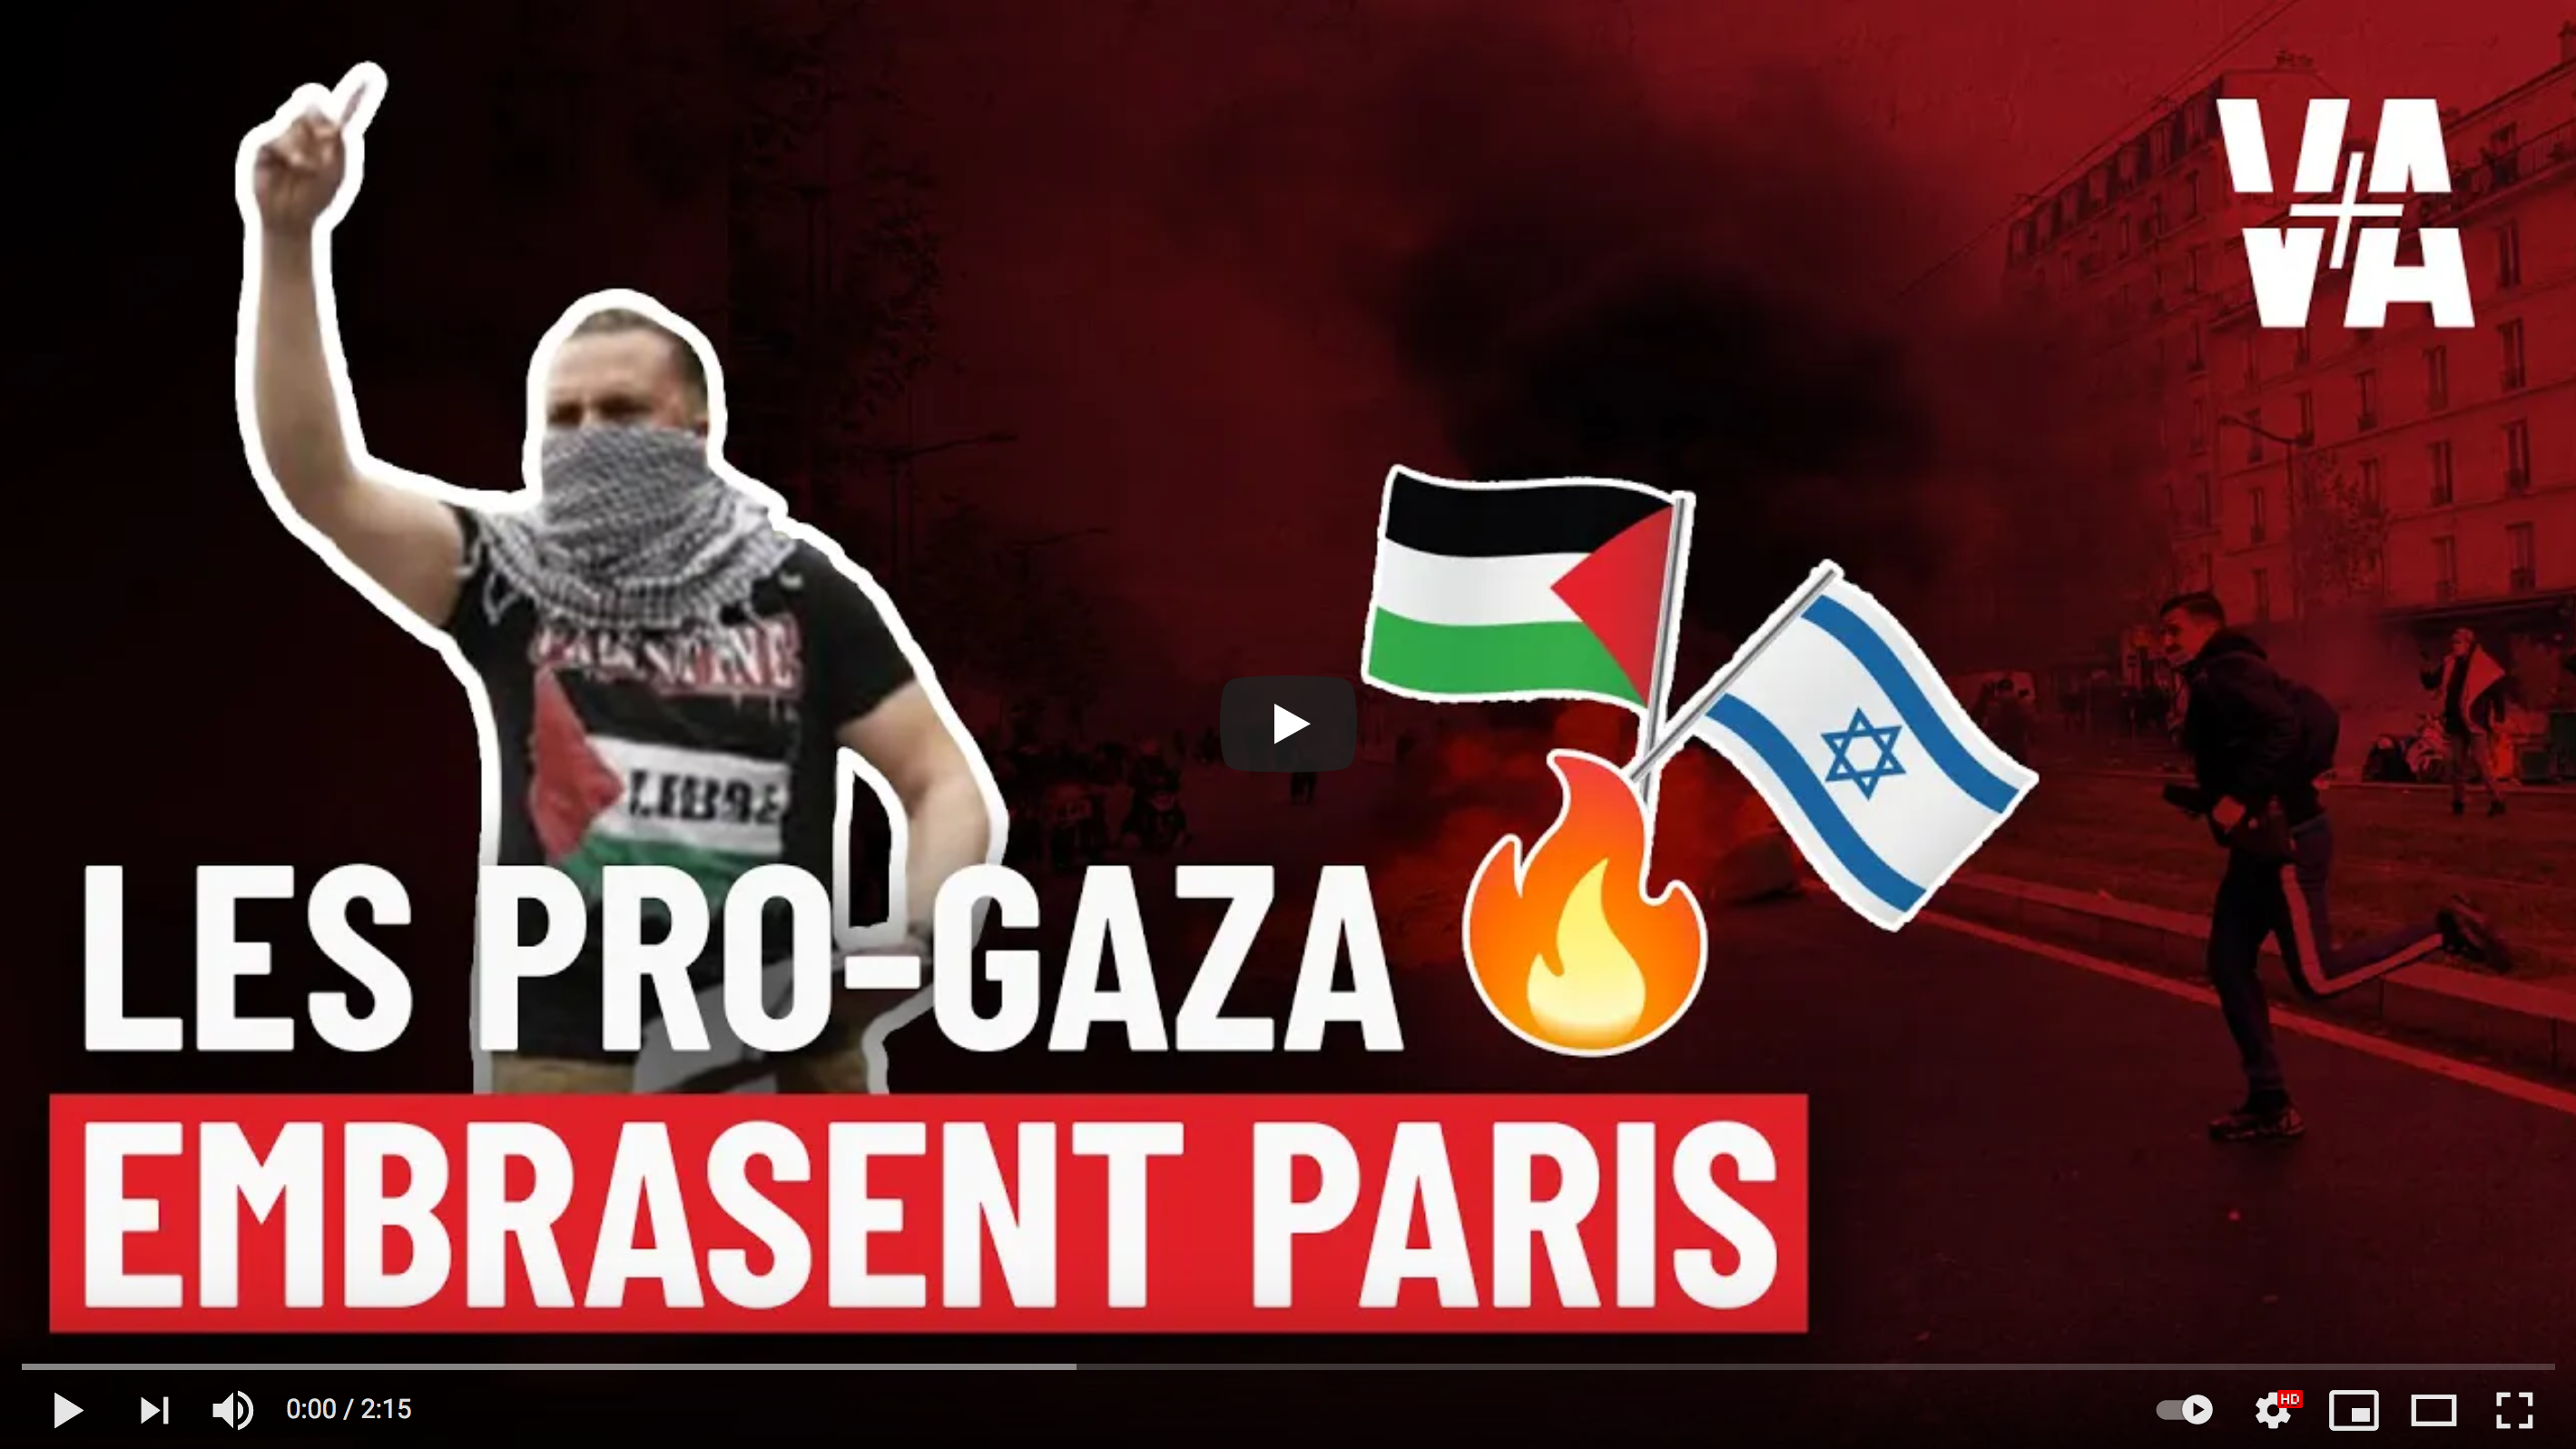 « Allah Akbar », les pro-Gaza embrasent Paris (REPORTAGE)